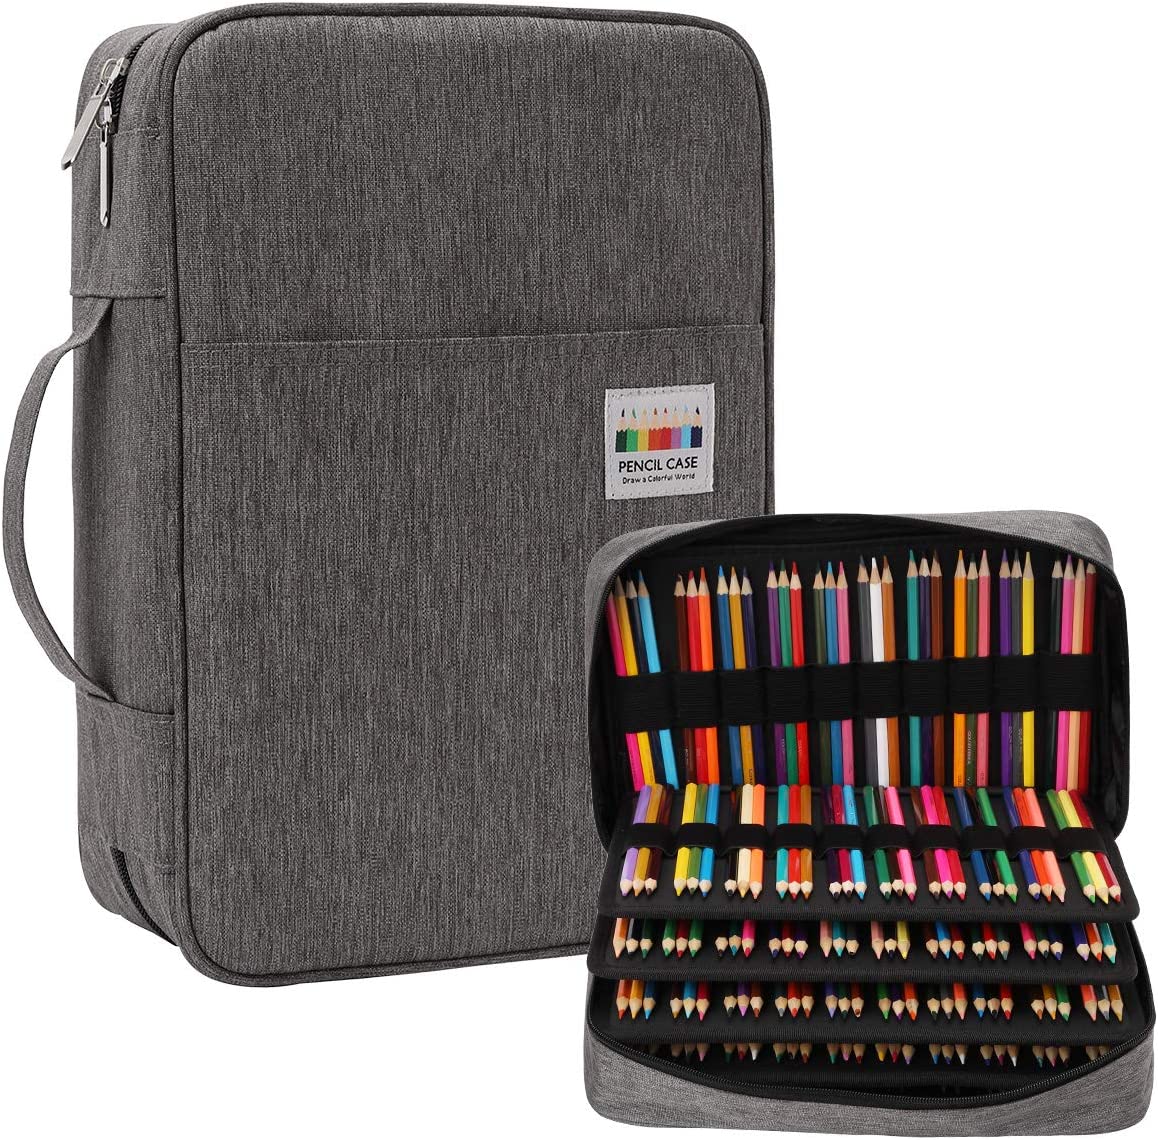 Portable Colored Pencil Case 360 Slots Pencil Case Or 240 Gel Pen